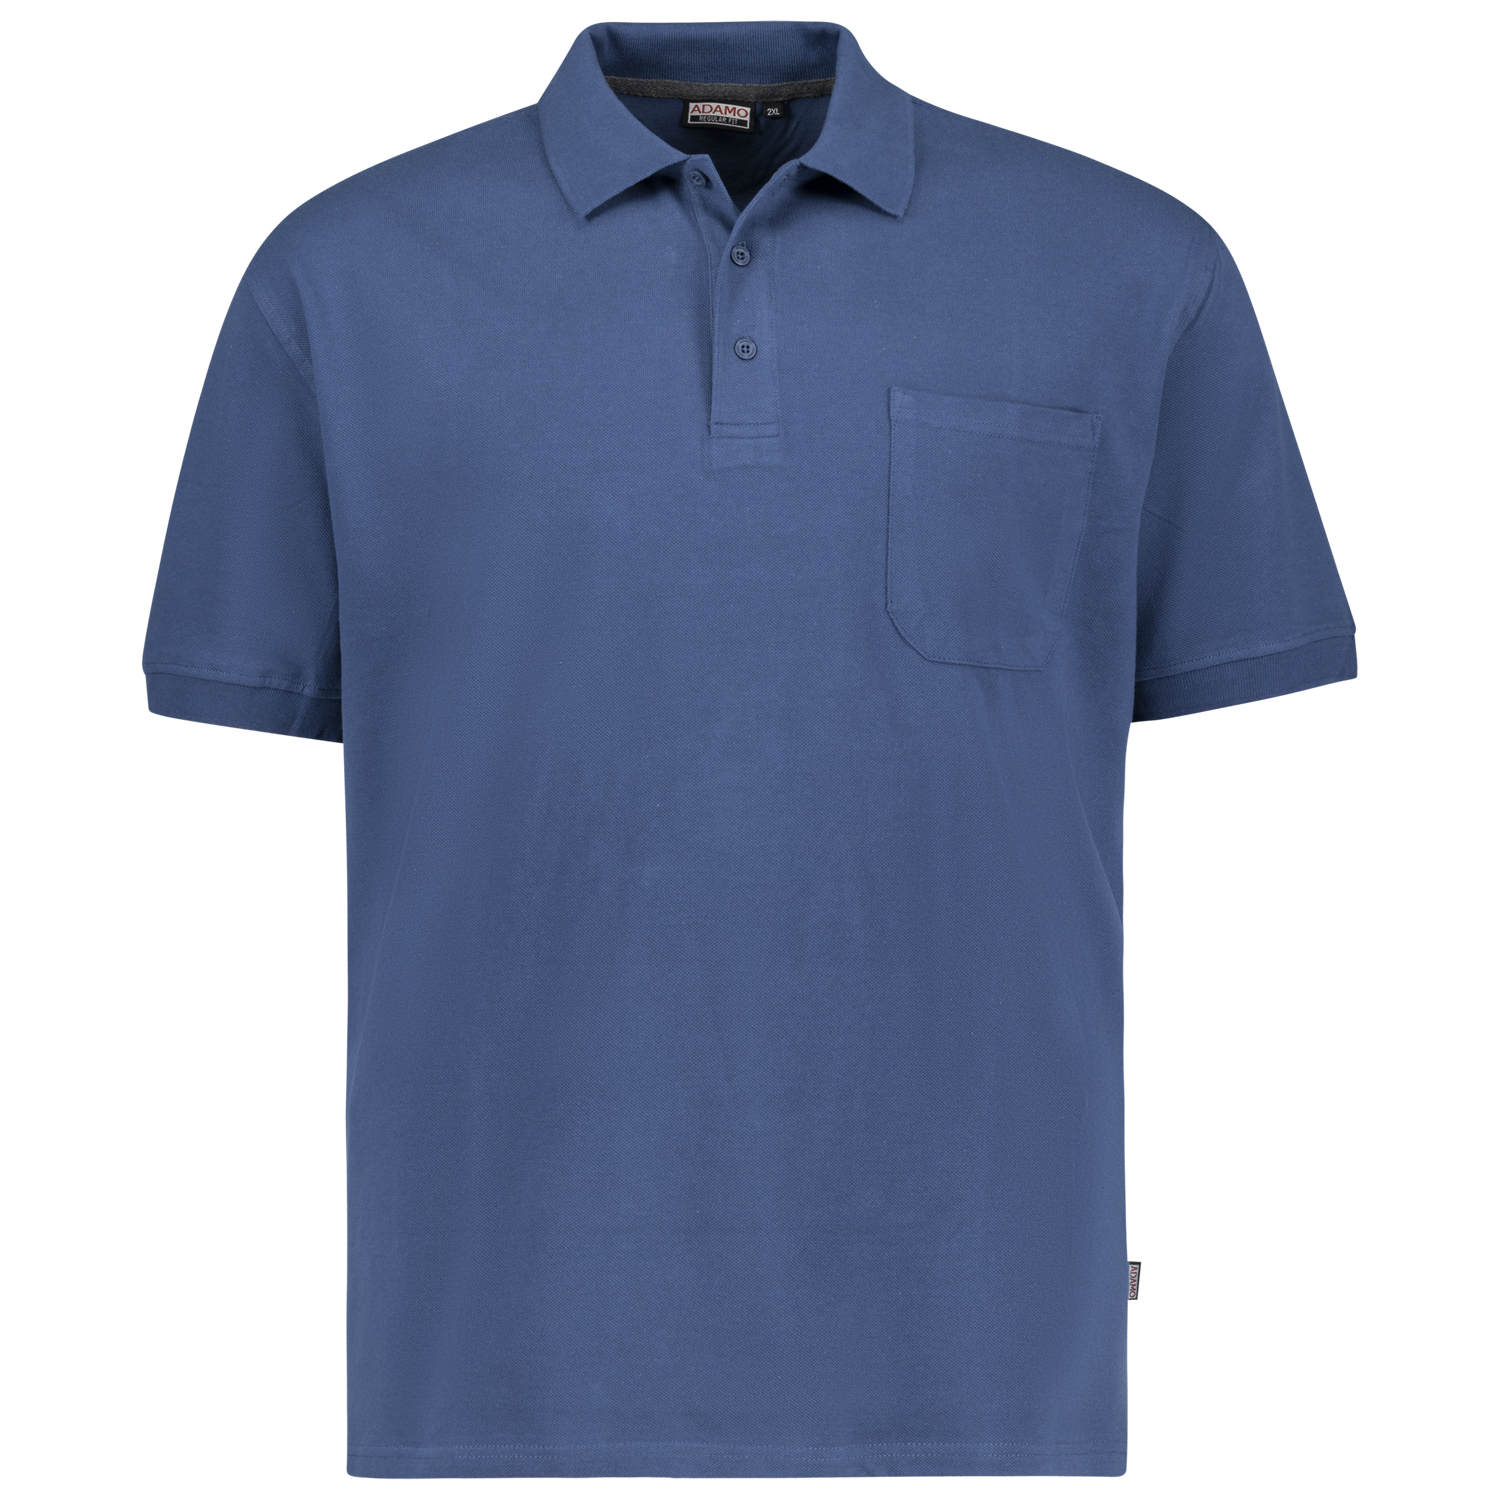 Admiralblaues Kurzarm Polo Shirt KENO von ADAMO in Pique Qualität für Herren in großen Größen bis 10XL